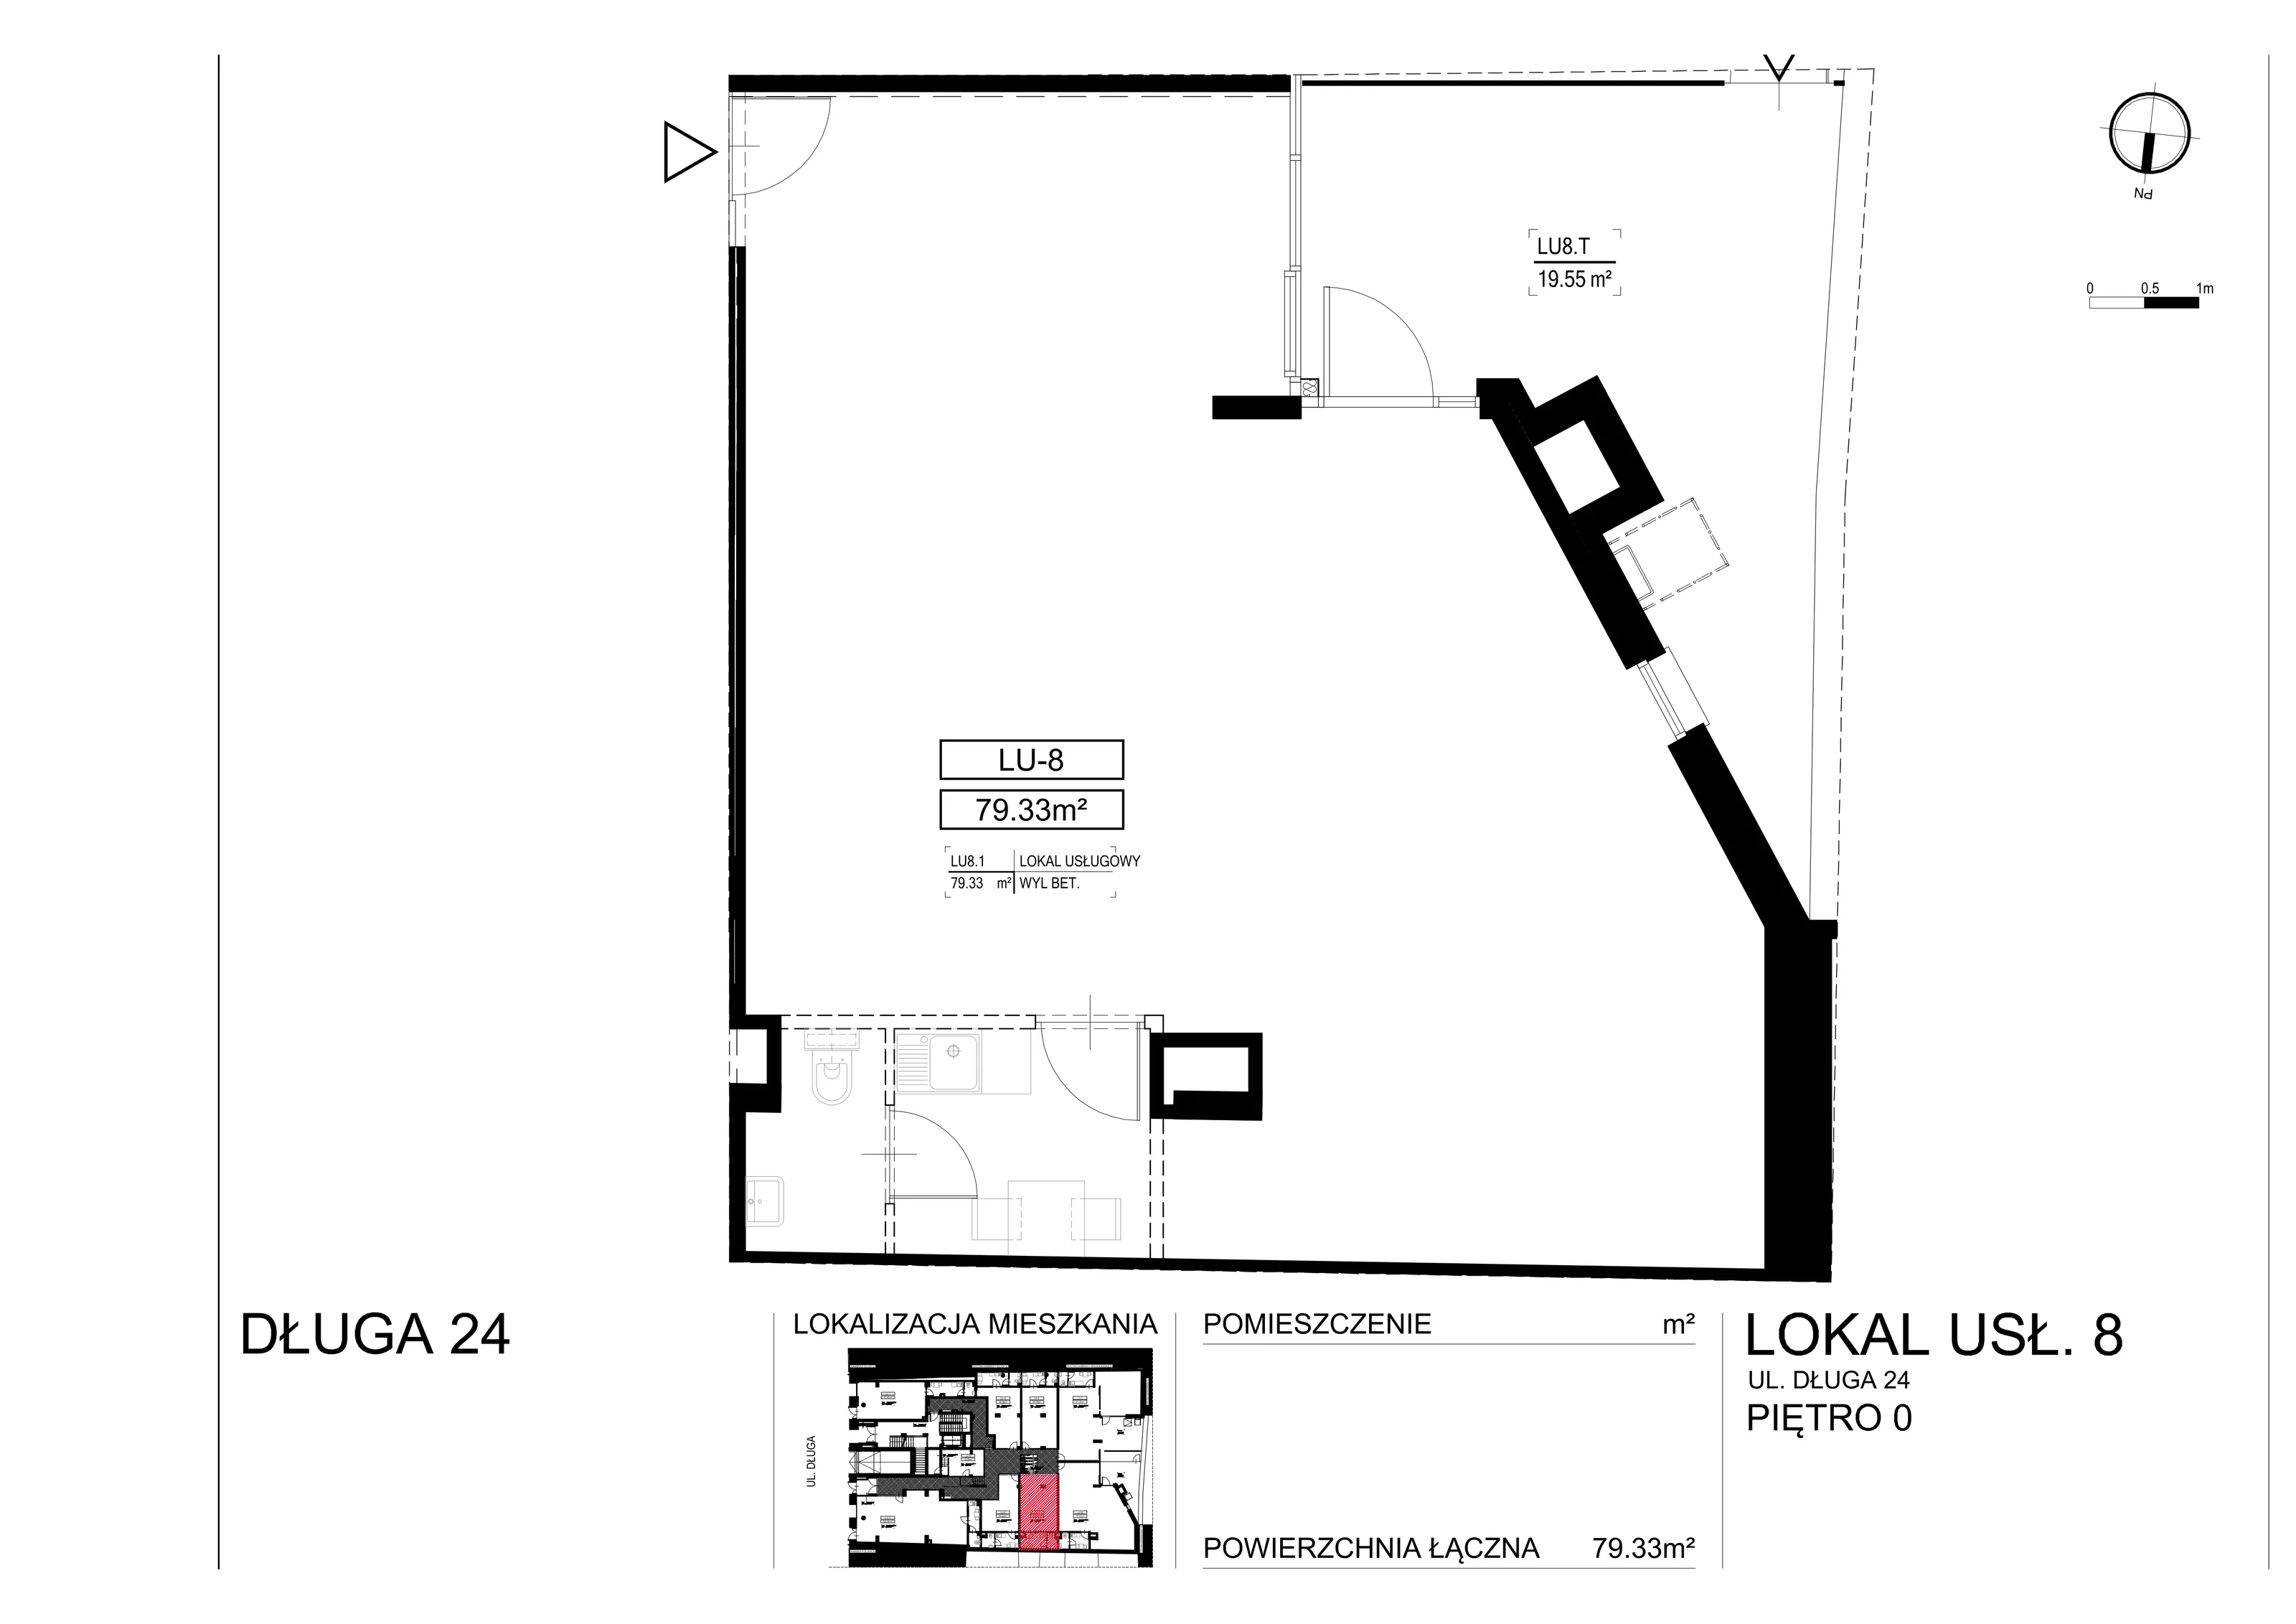 Lokal użytkowy 79,33 m², oferta nr L-8, Długa Residence - lokale użytkowe, Kraków, Stare Miasto, Kleparz, ul. Długa 24